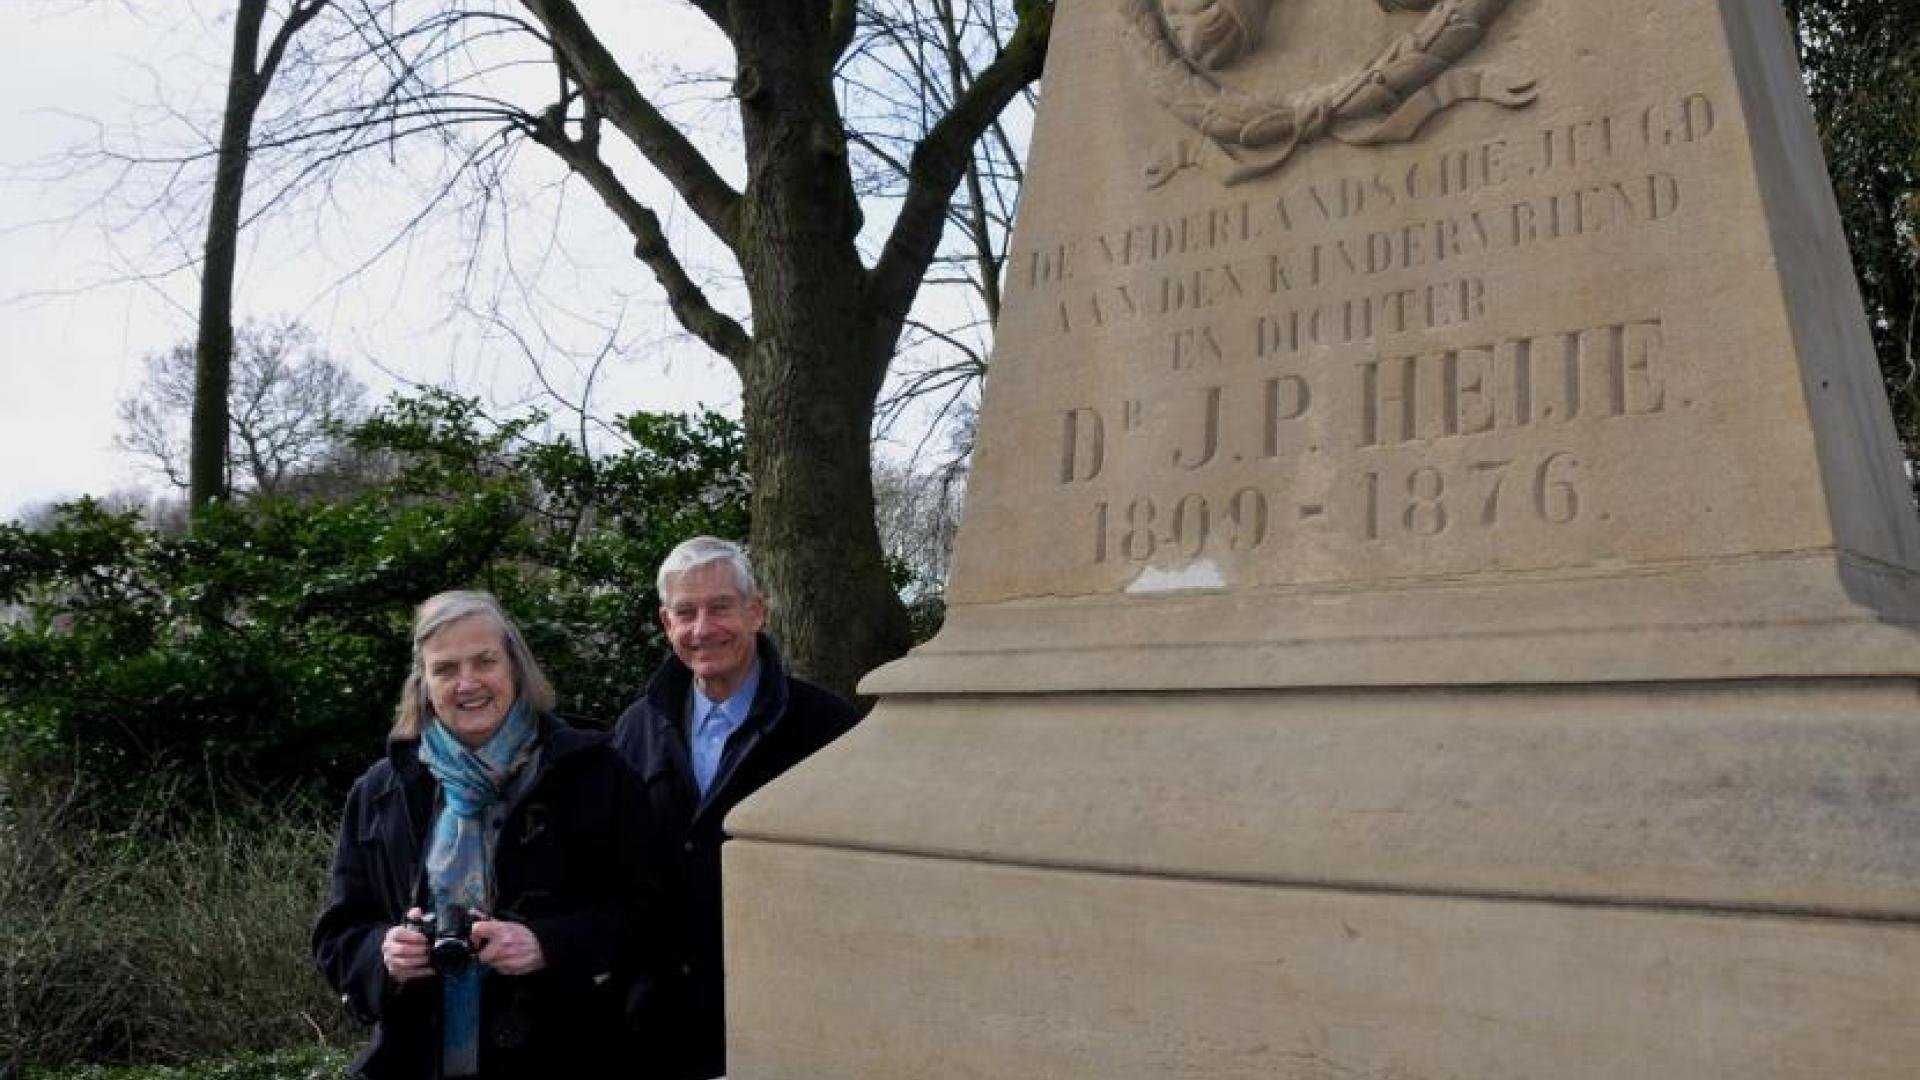 De achter-achterkleinzoon van Jan Pieter Heije, Wil. Hubertus en zijn vrouw Gesine Daniels bij het graf van J.P. Heije.